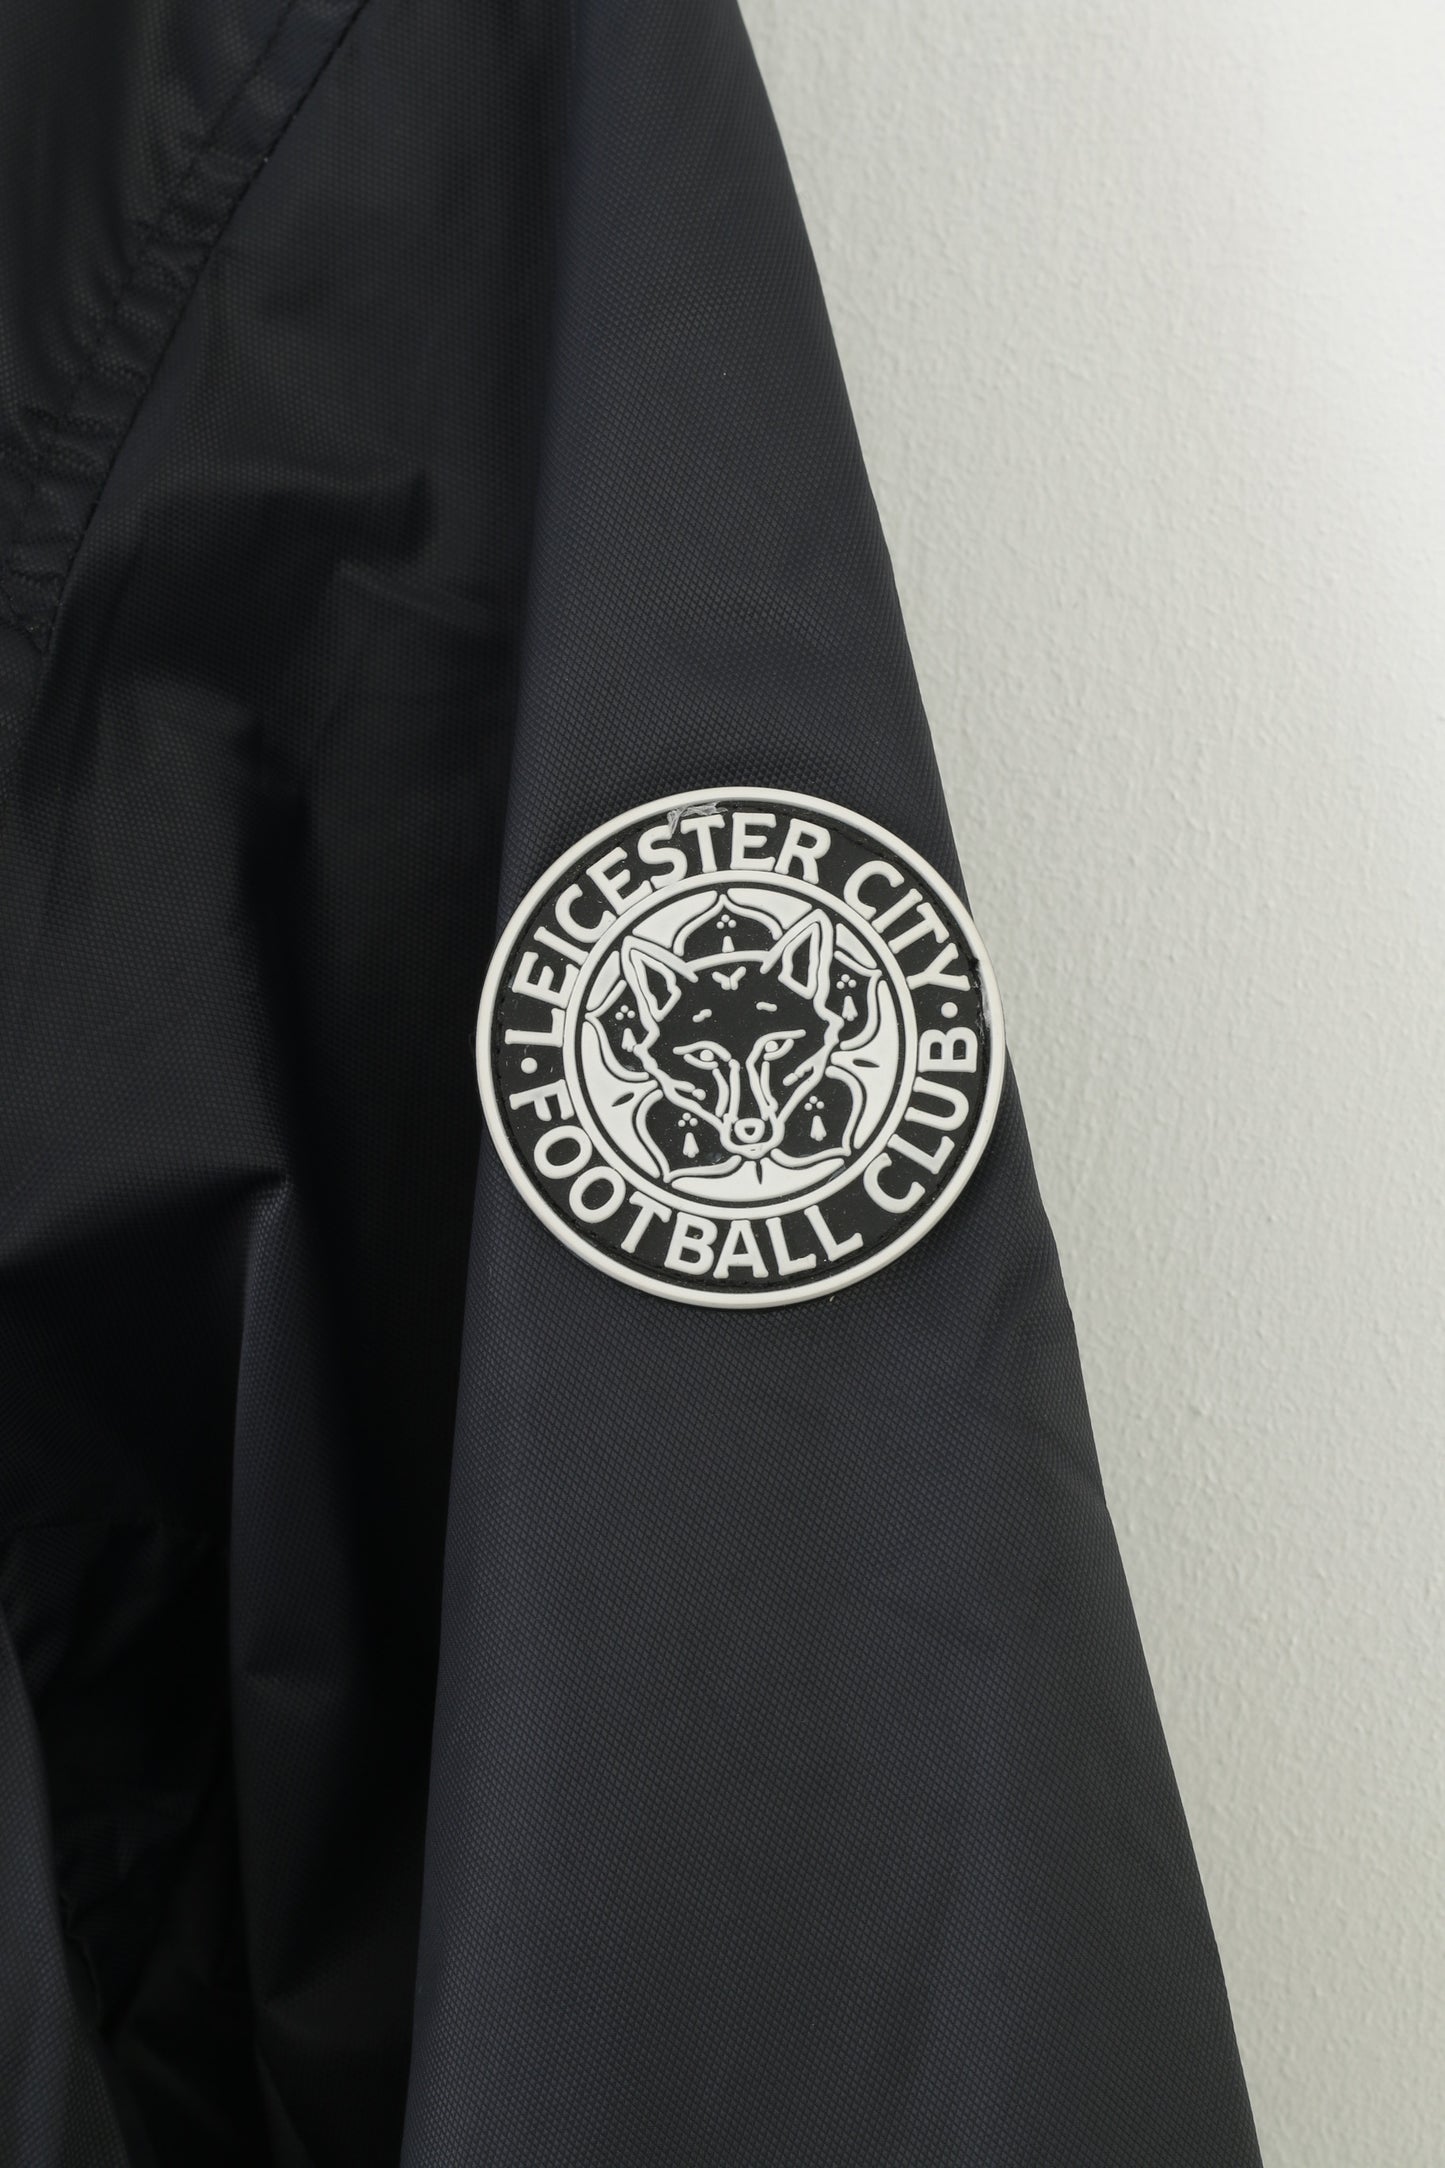 Giacca da uomo Leicester City Football Club L nera con cerniera intera sportiva in nylon impermeabile top vintage